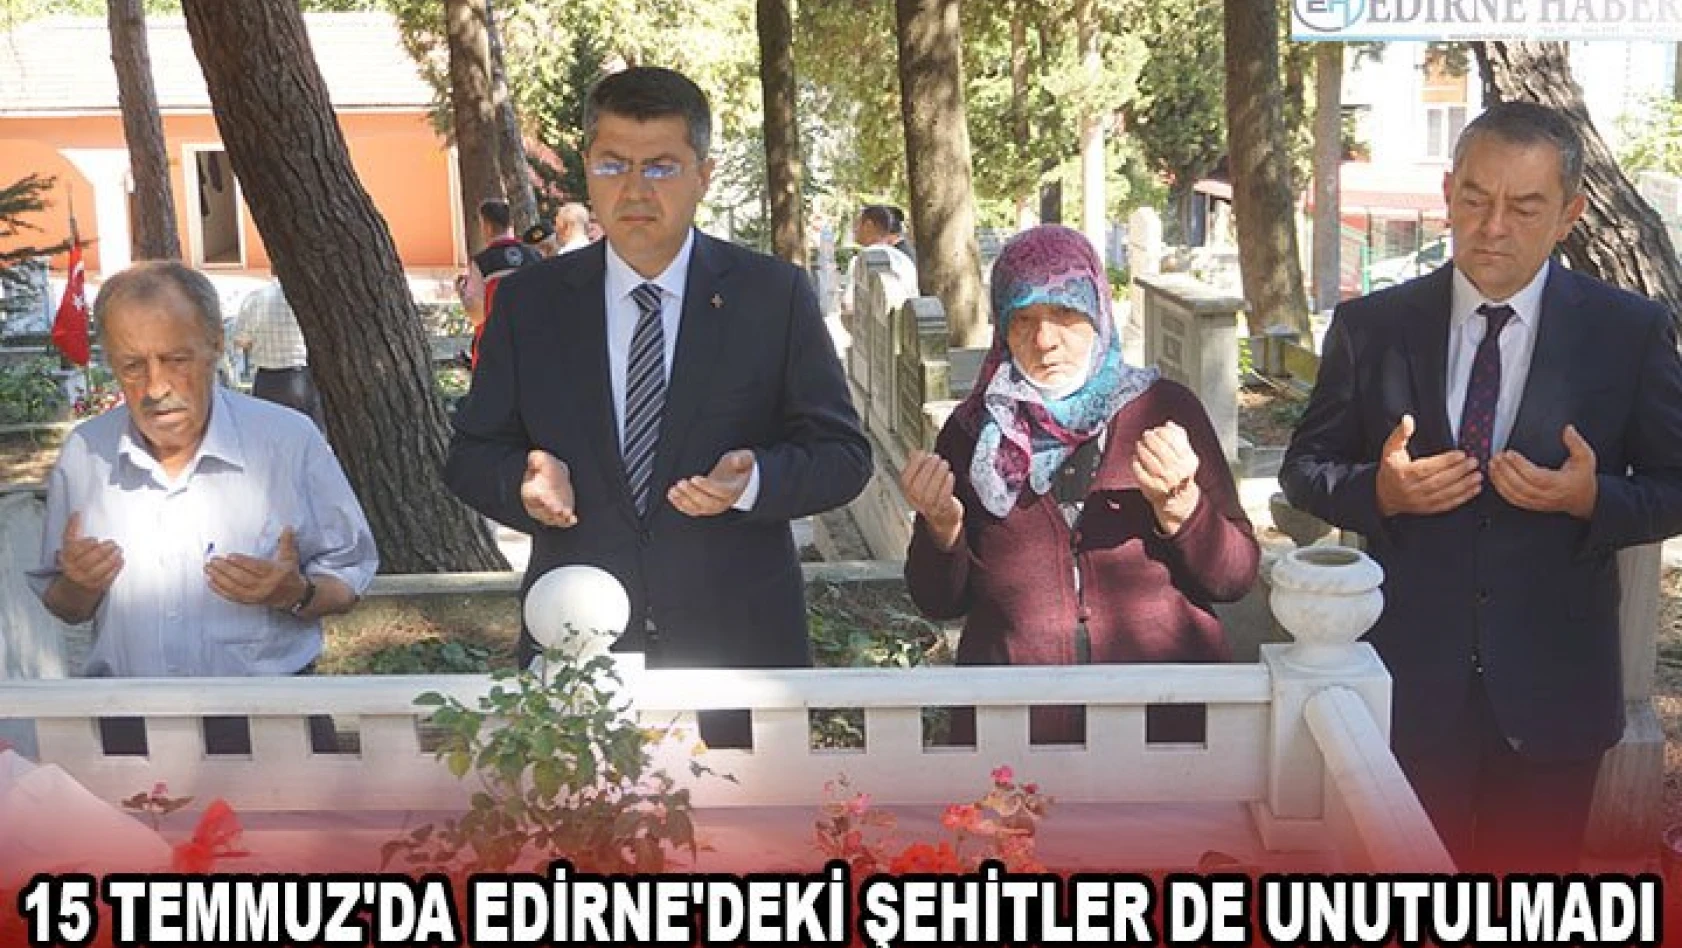 15 Temmuz'da Edirne'deki şehitler de unutulmadı